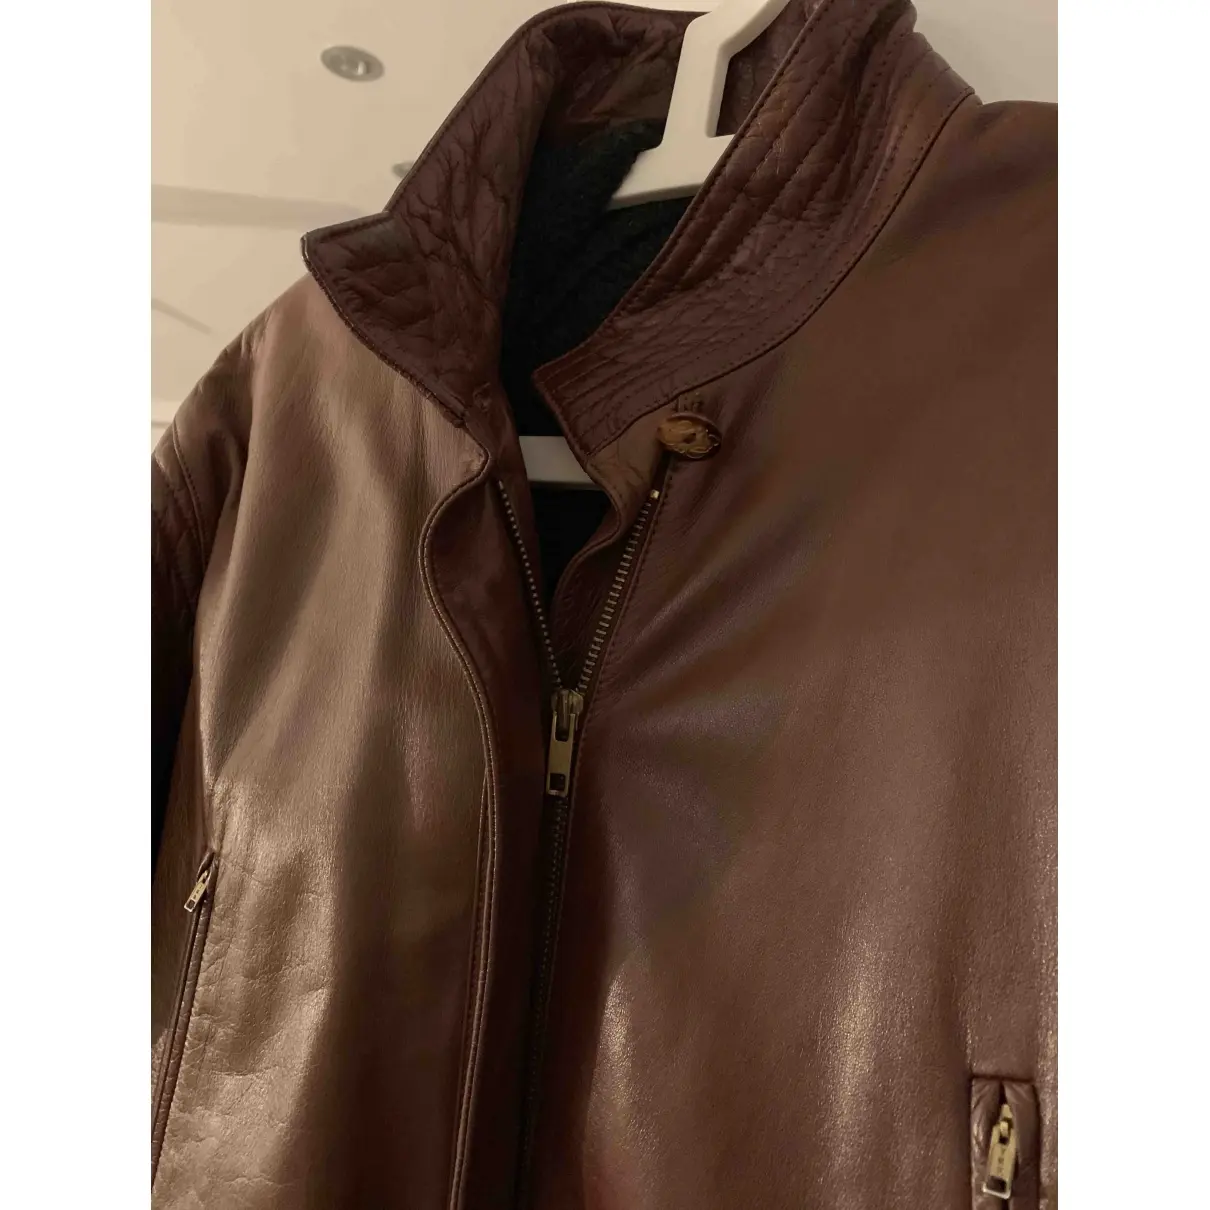 Buy Loewe Leather cardi coat online - Vintage